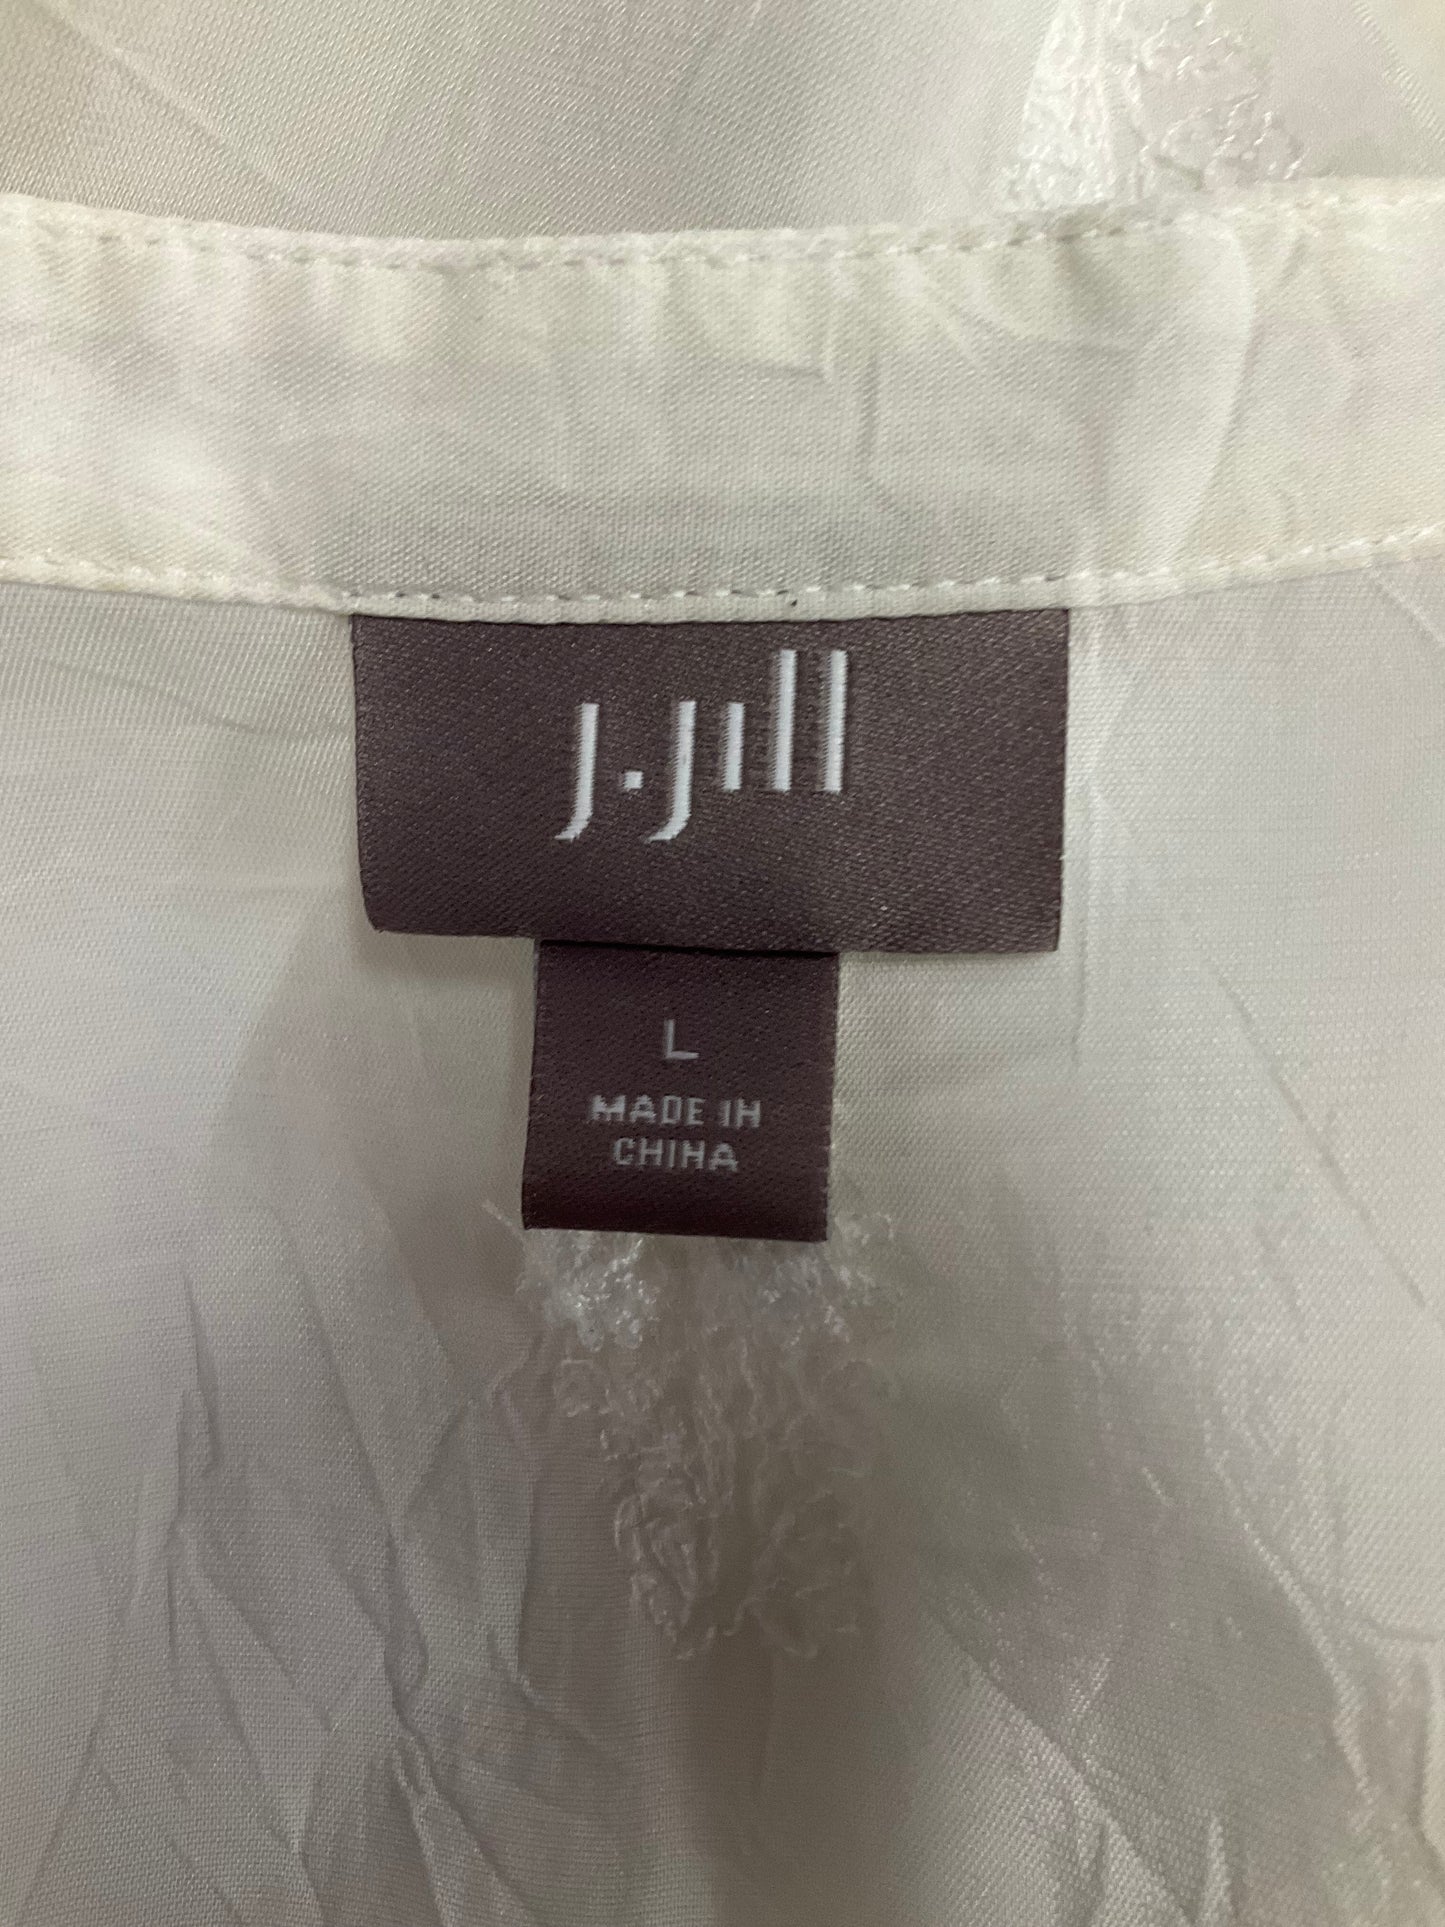 Blouse Long Sleeve By J. Jill  Size: L